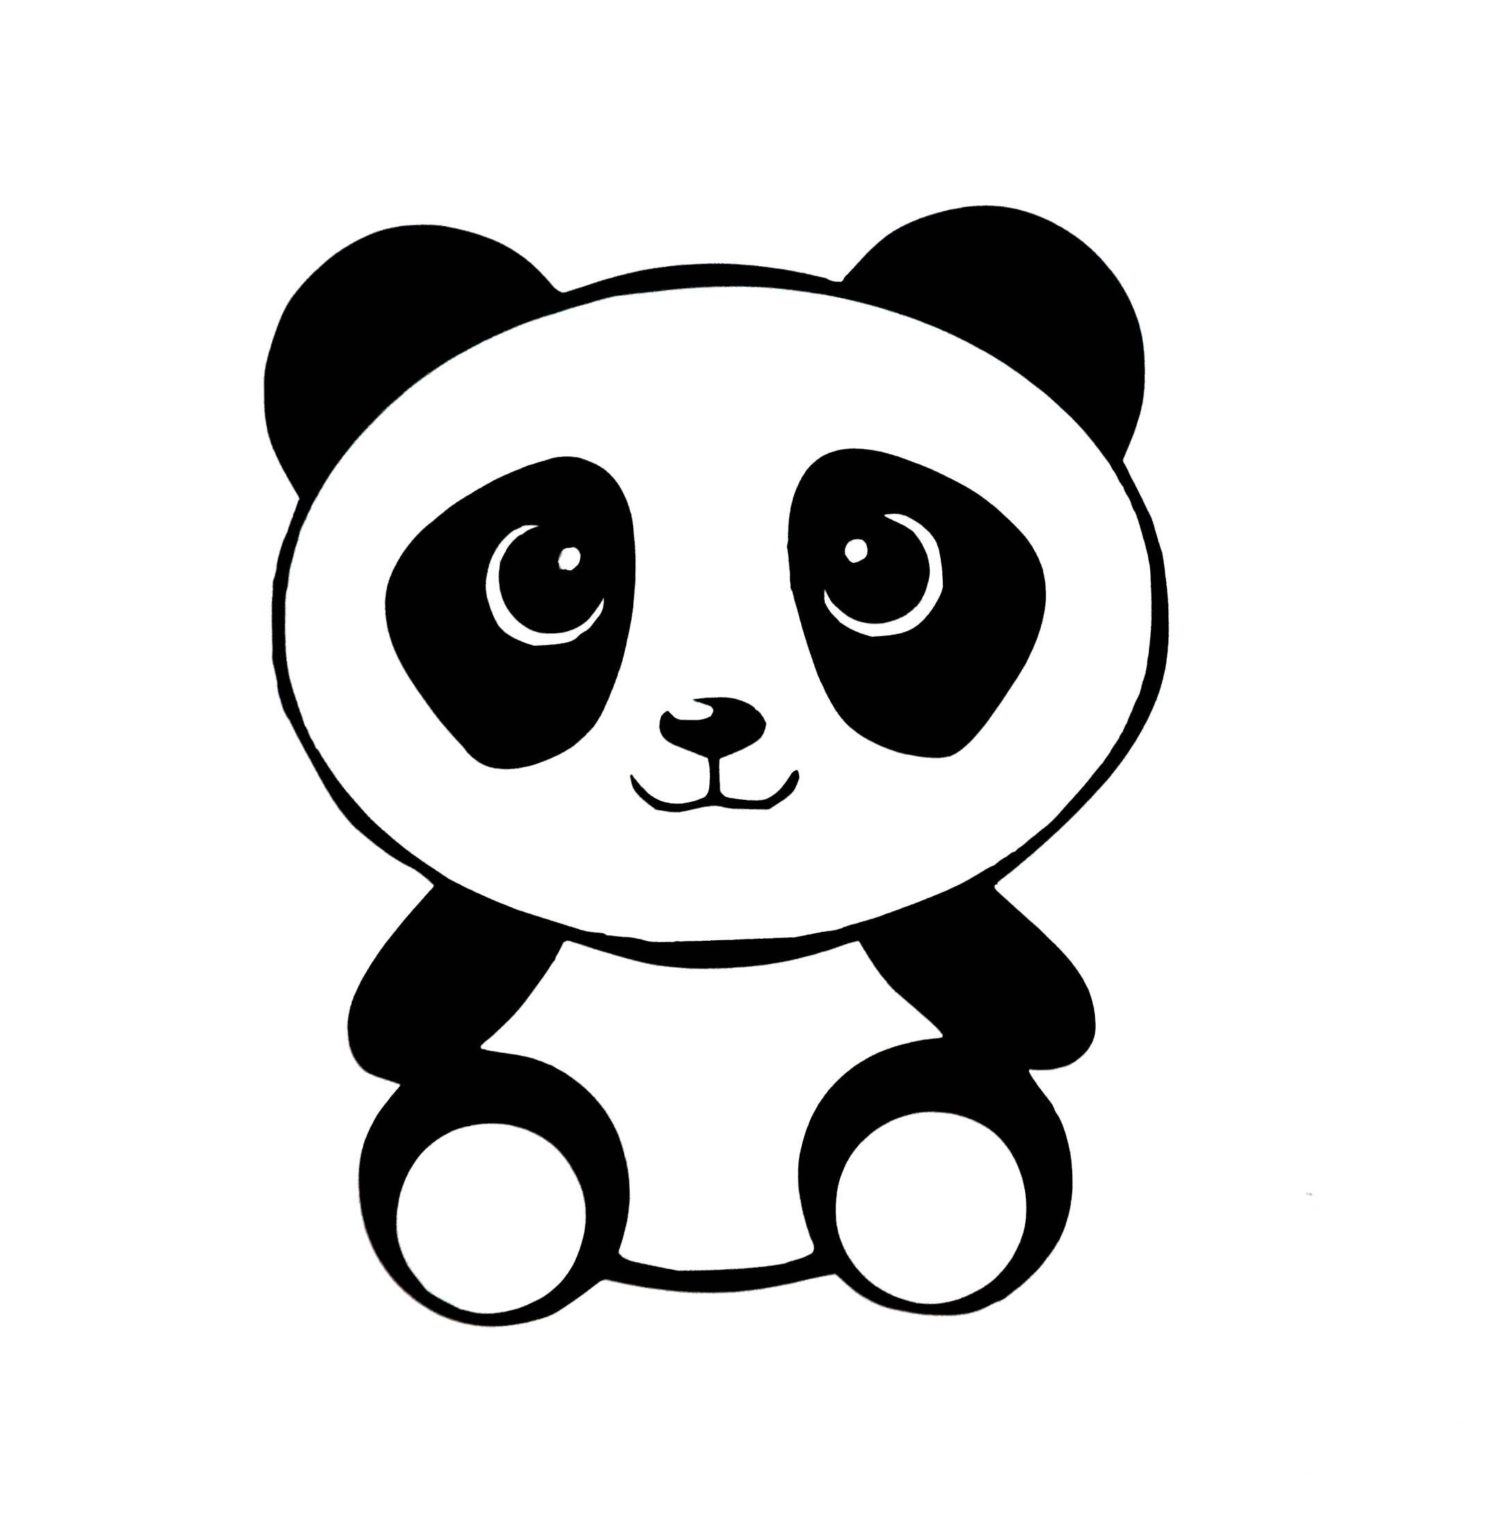 Dessinez un panda  g ant tape par tape avec notre tuto 